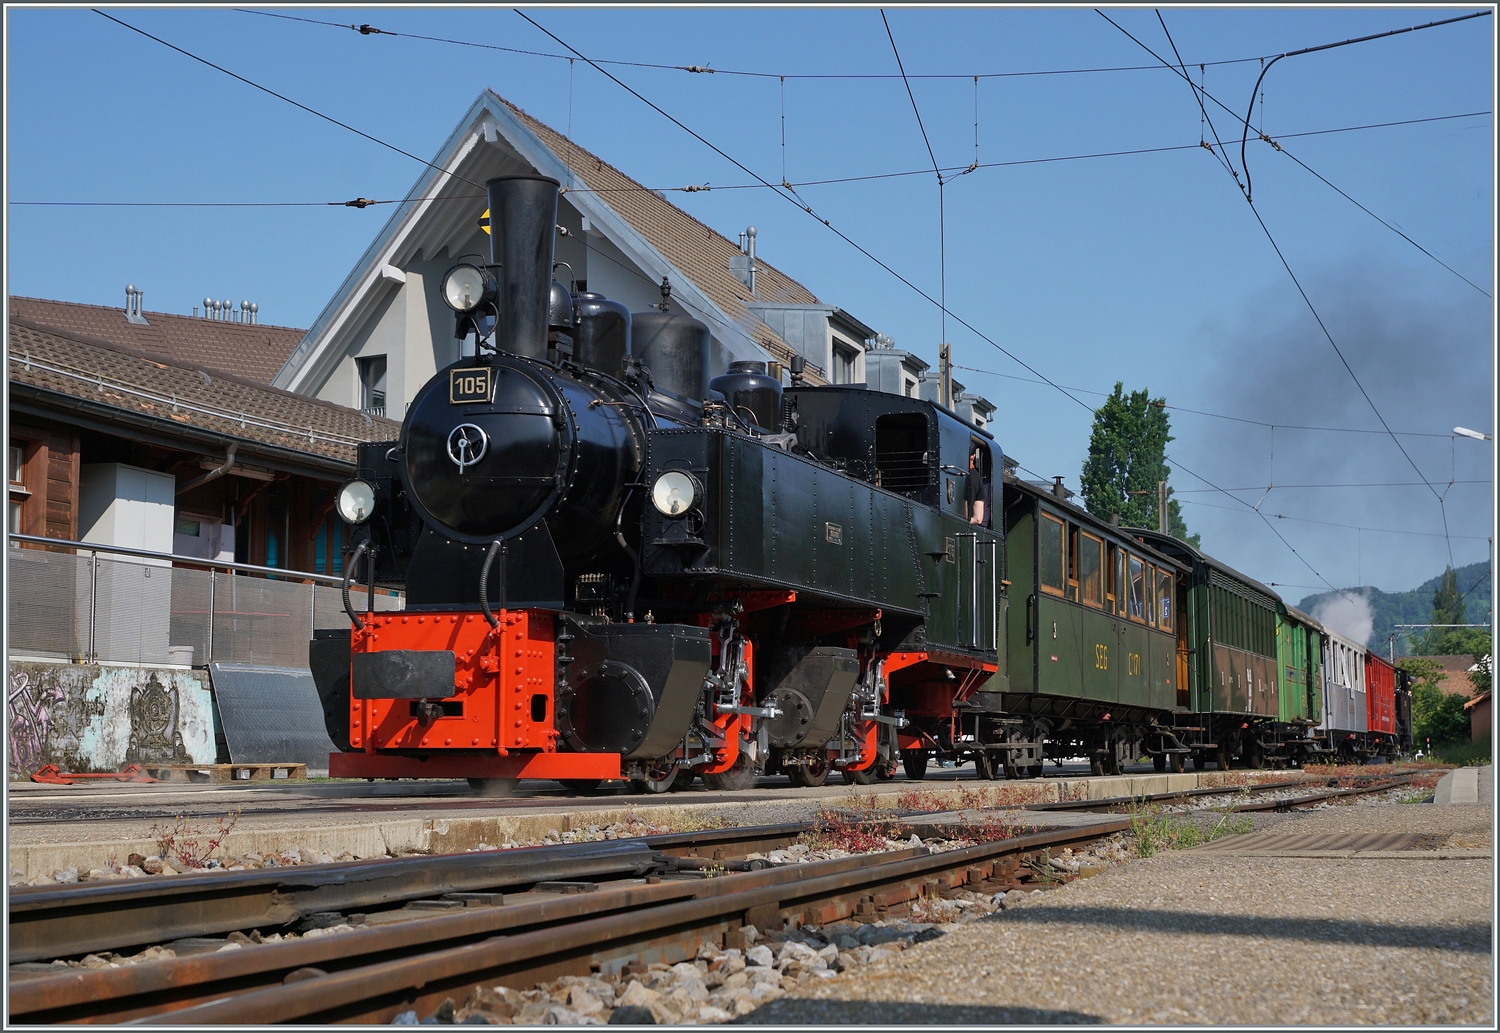 Festival Suisse de la vapeur / Schweizer Dampffestival 2023 der Blonay-Chamby Bahn: Die G 2x 2/2 105 dampft am Schluss des Dampfzuges nach Vevey kurz vor der Abfahrt in Blonay. 

29. Mai 2023